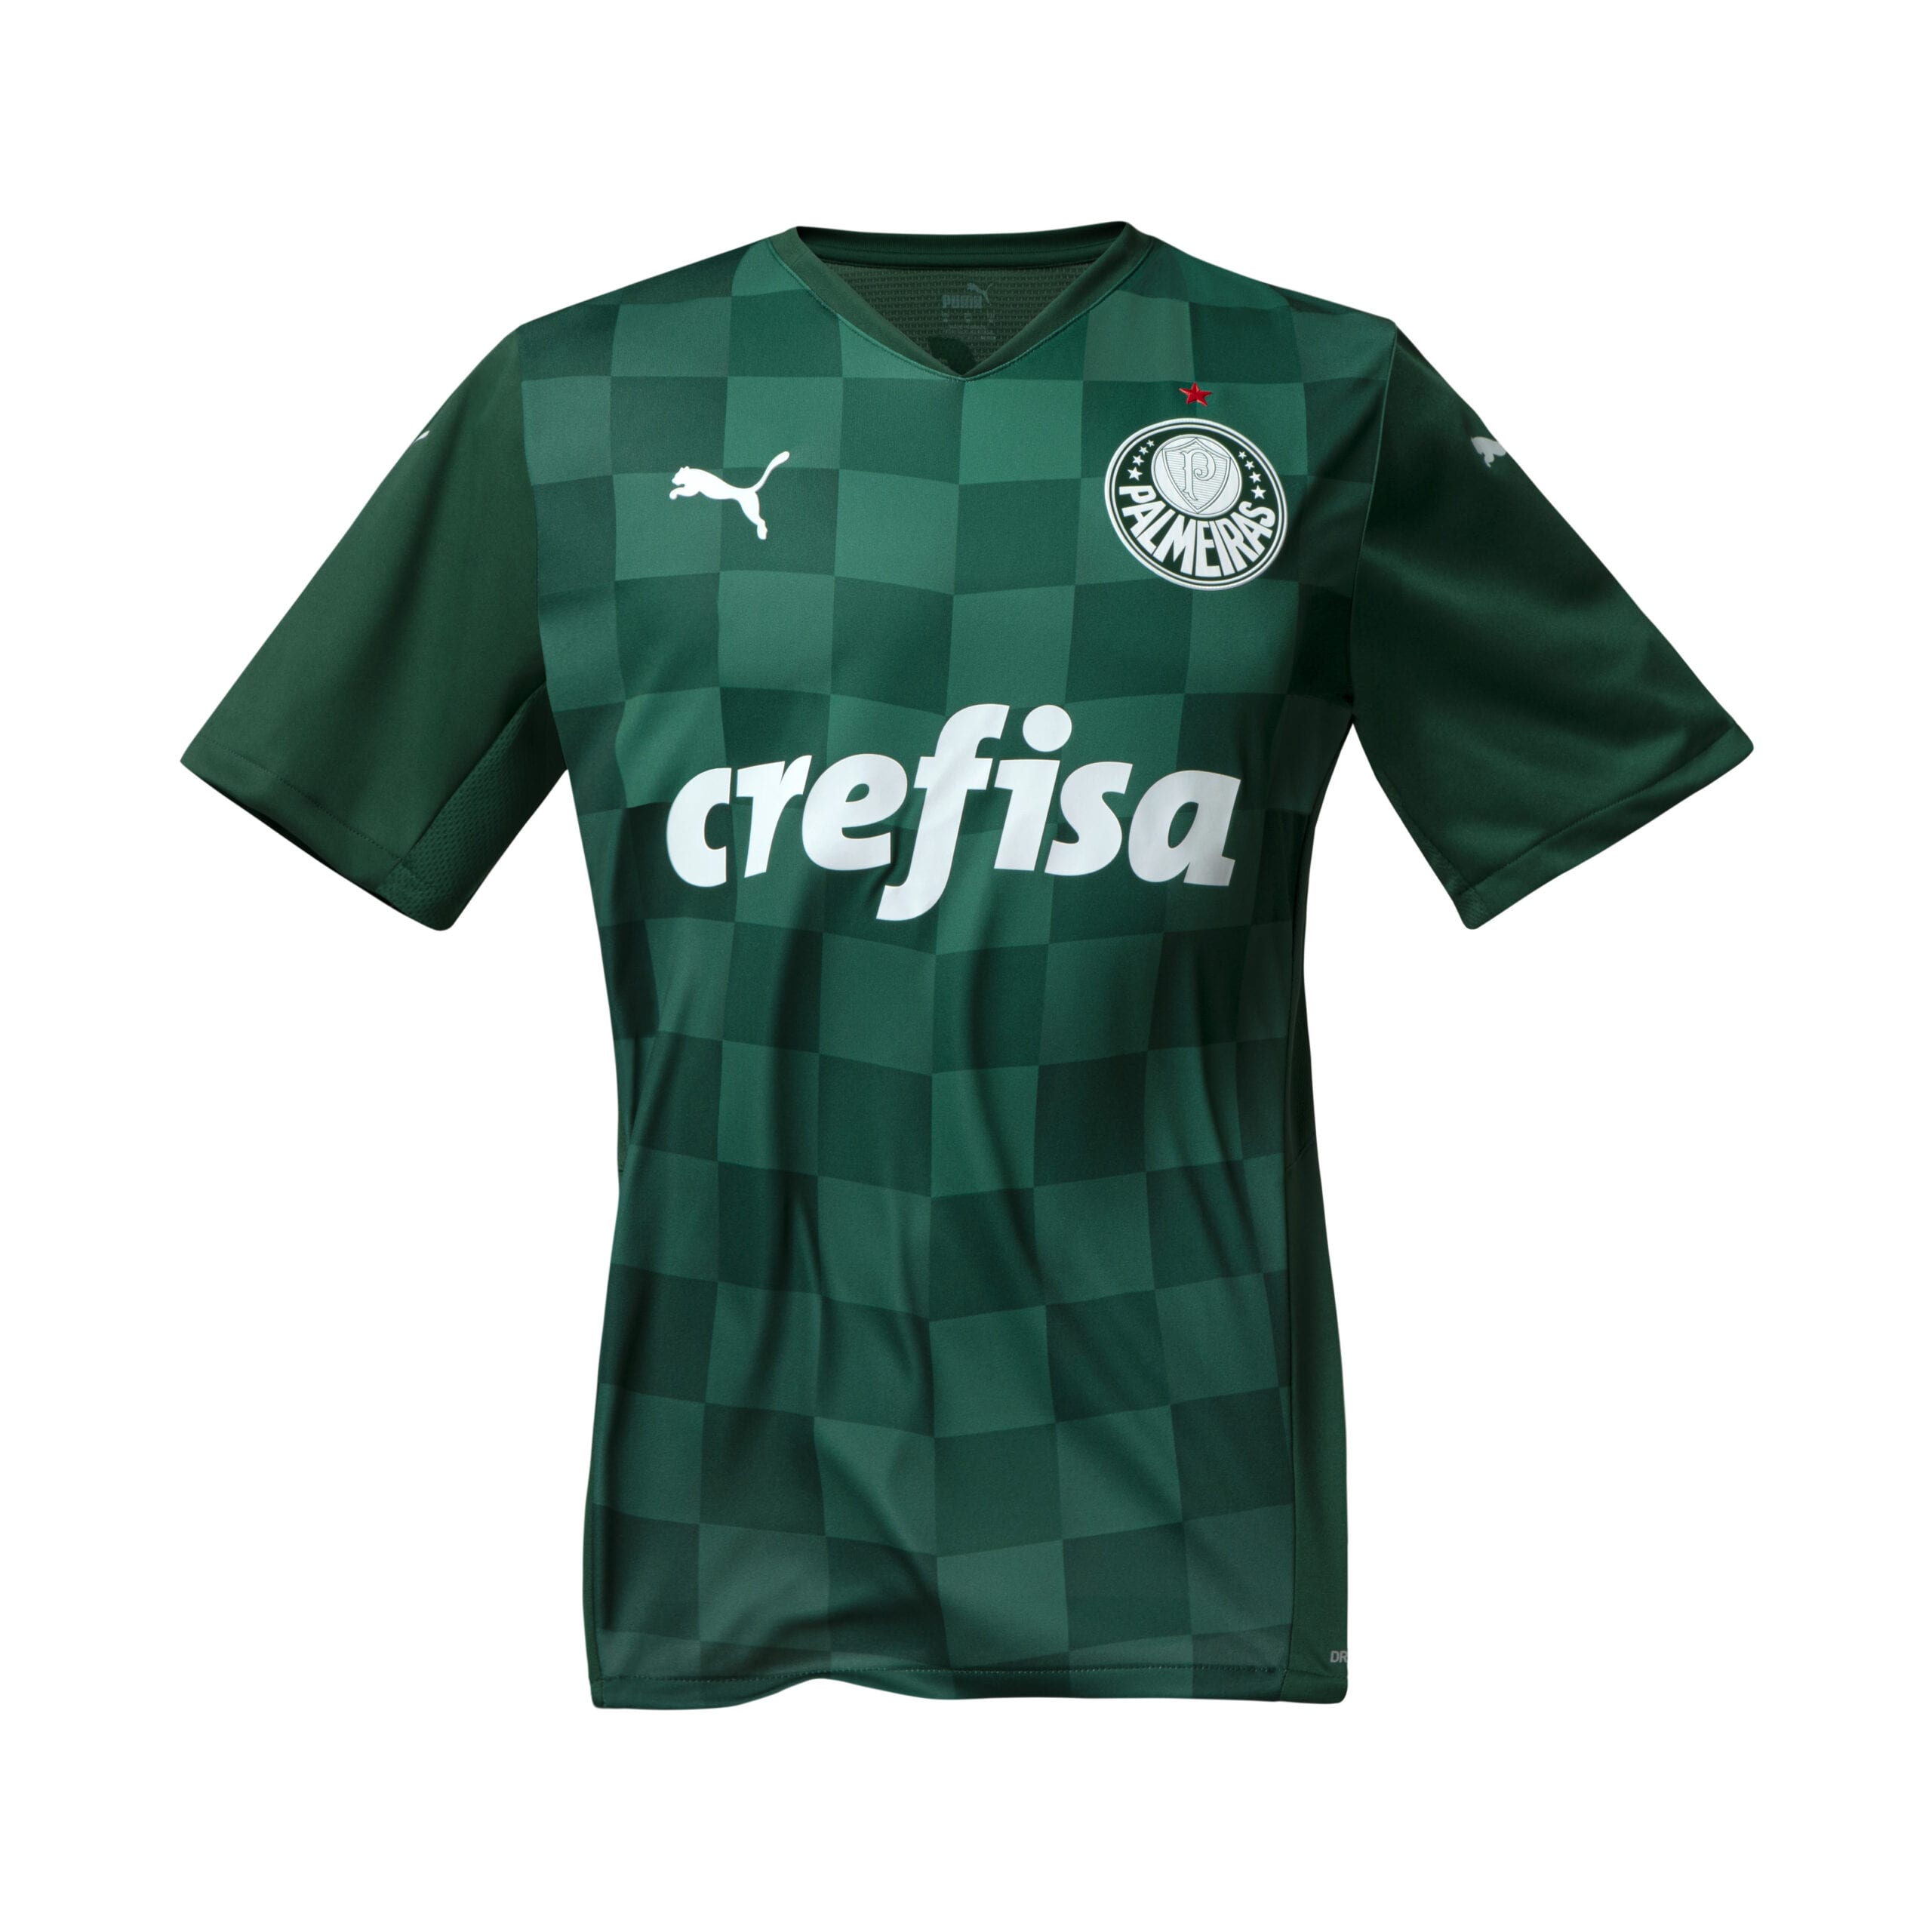 Nova camisa do Palmeiras é lançada! Veja fotos e vídeos oficiais